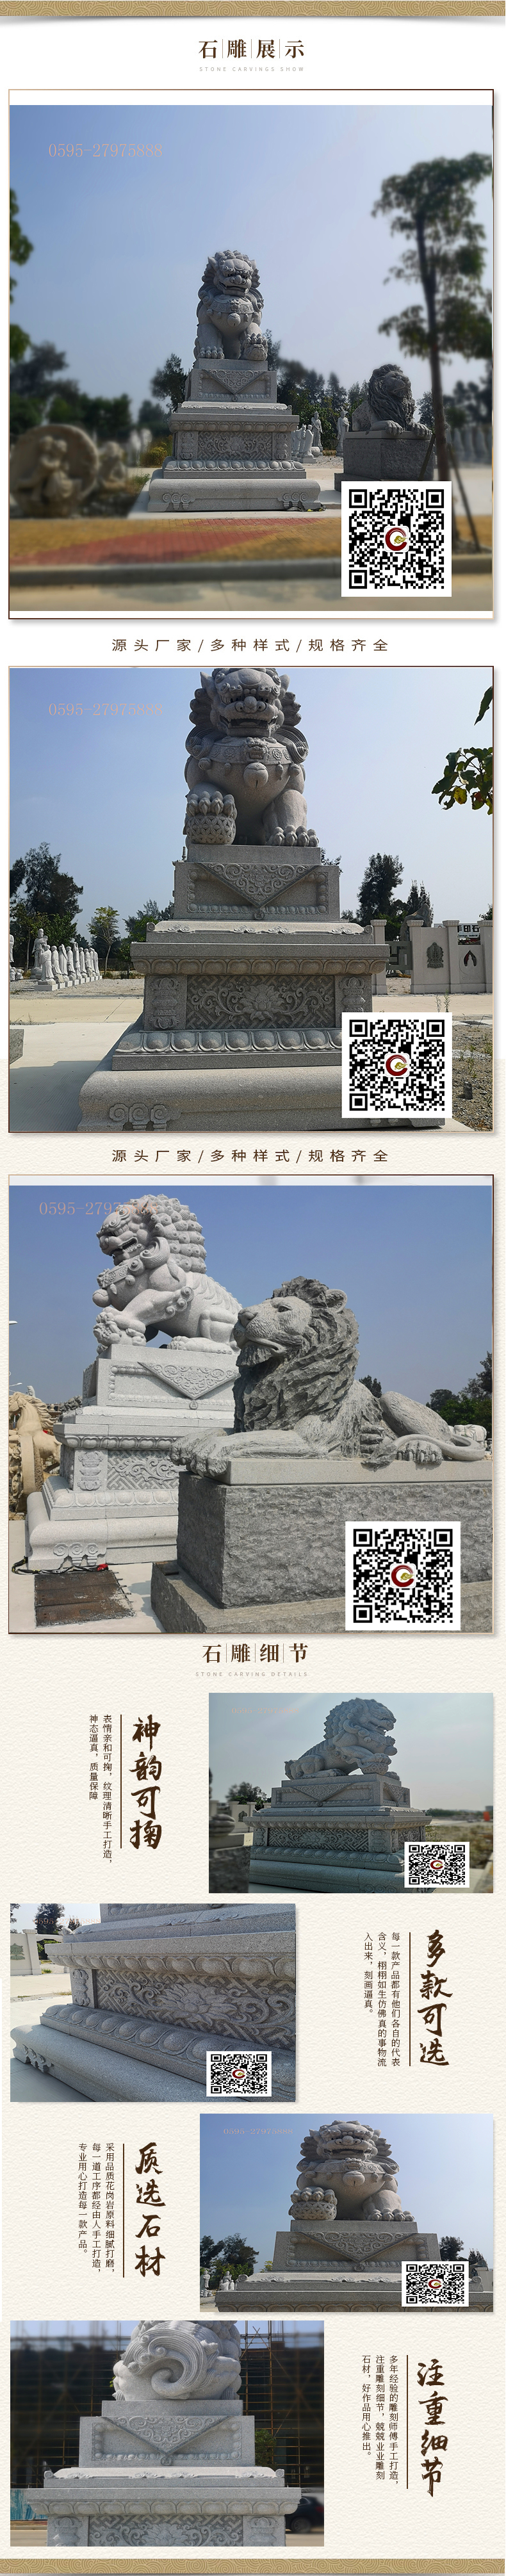 故宫石狮子 石雕北京狮子 霸气石雕狮子图片 福建石雕 石狮子厂家示例图18